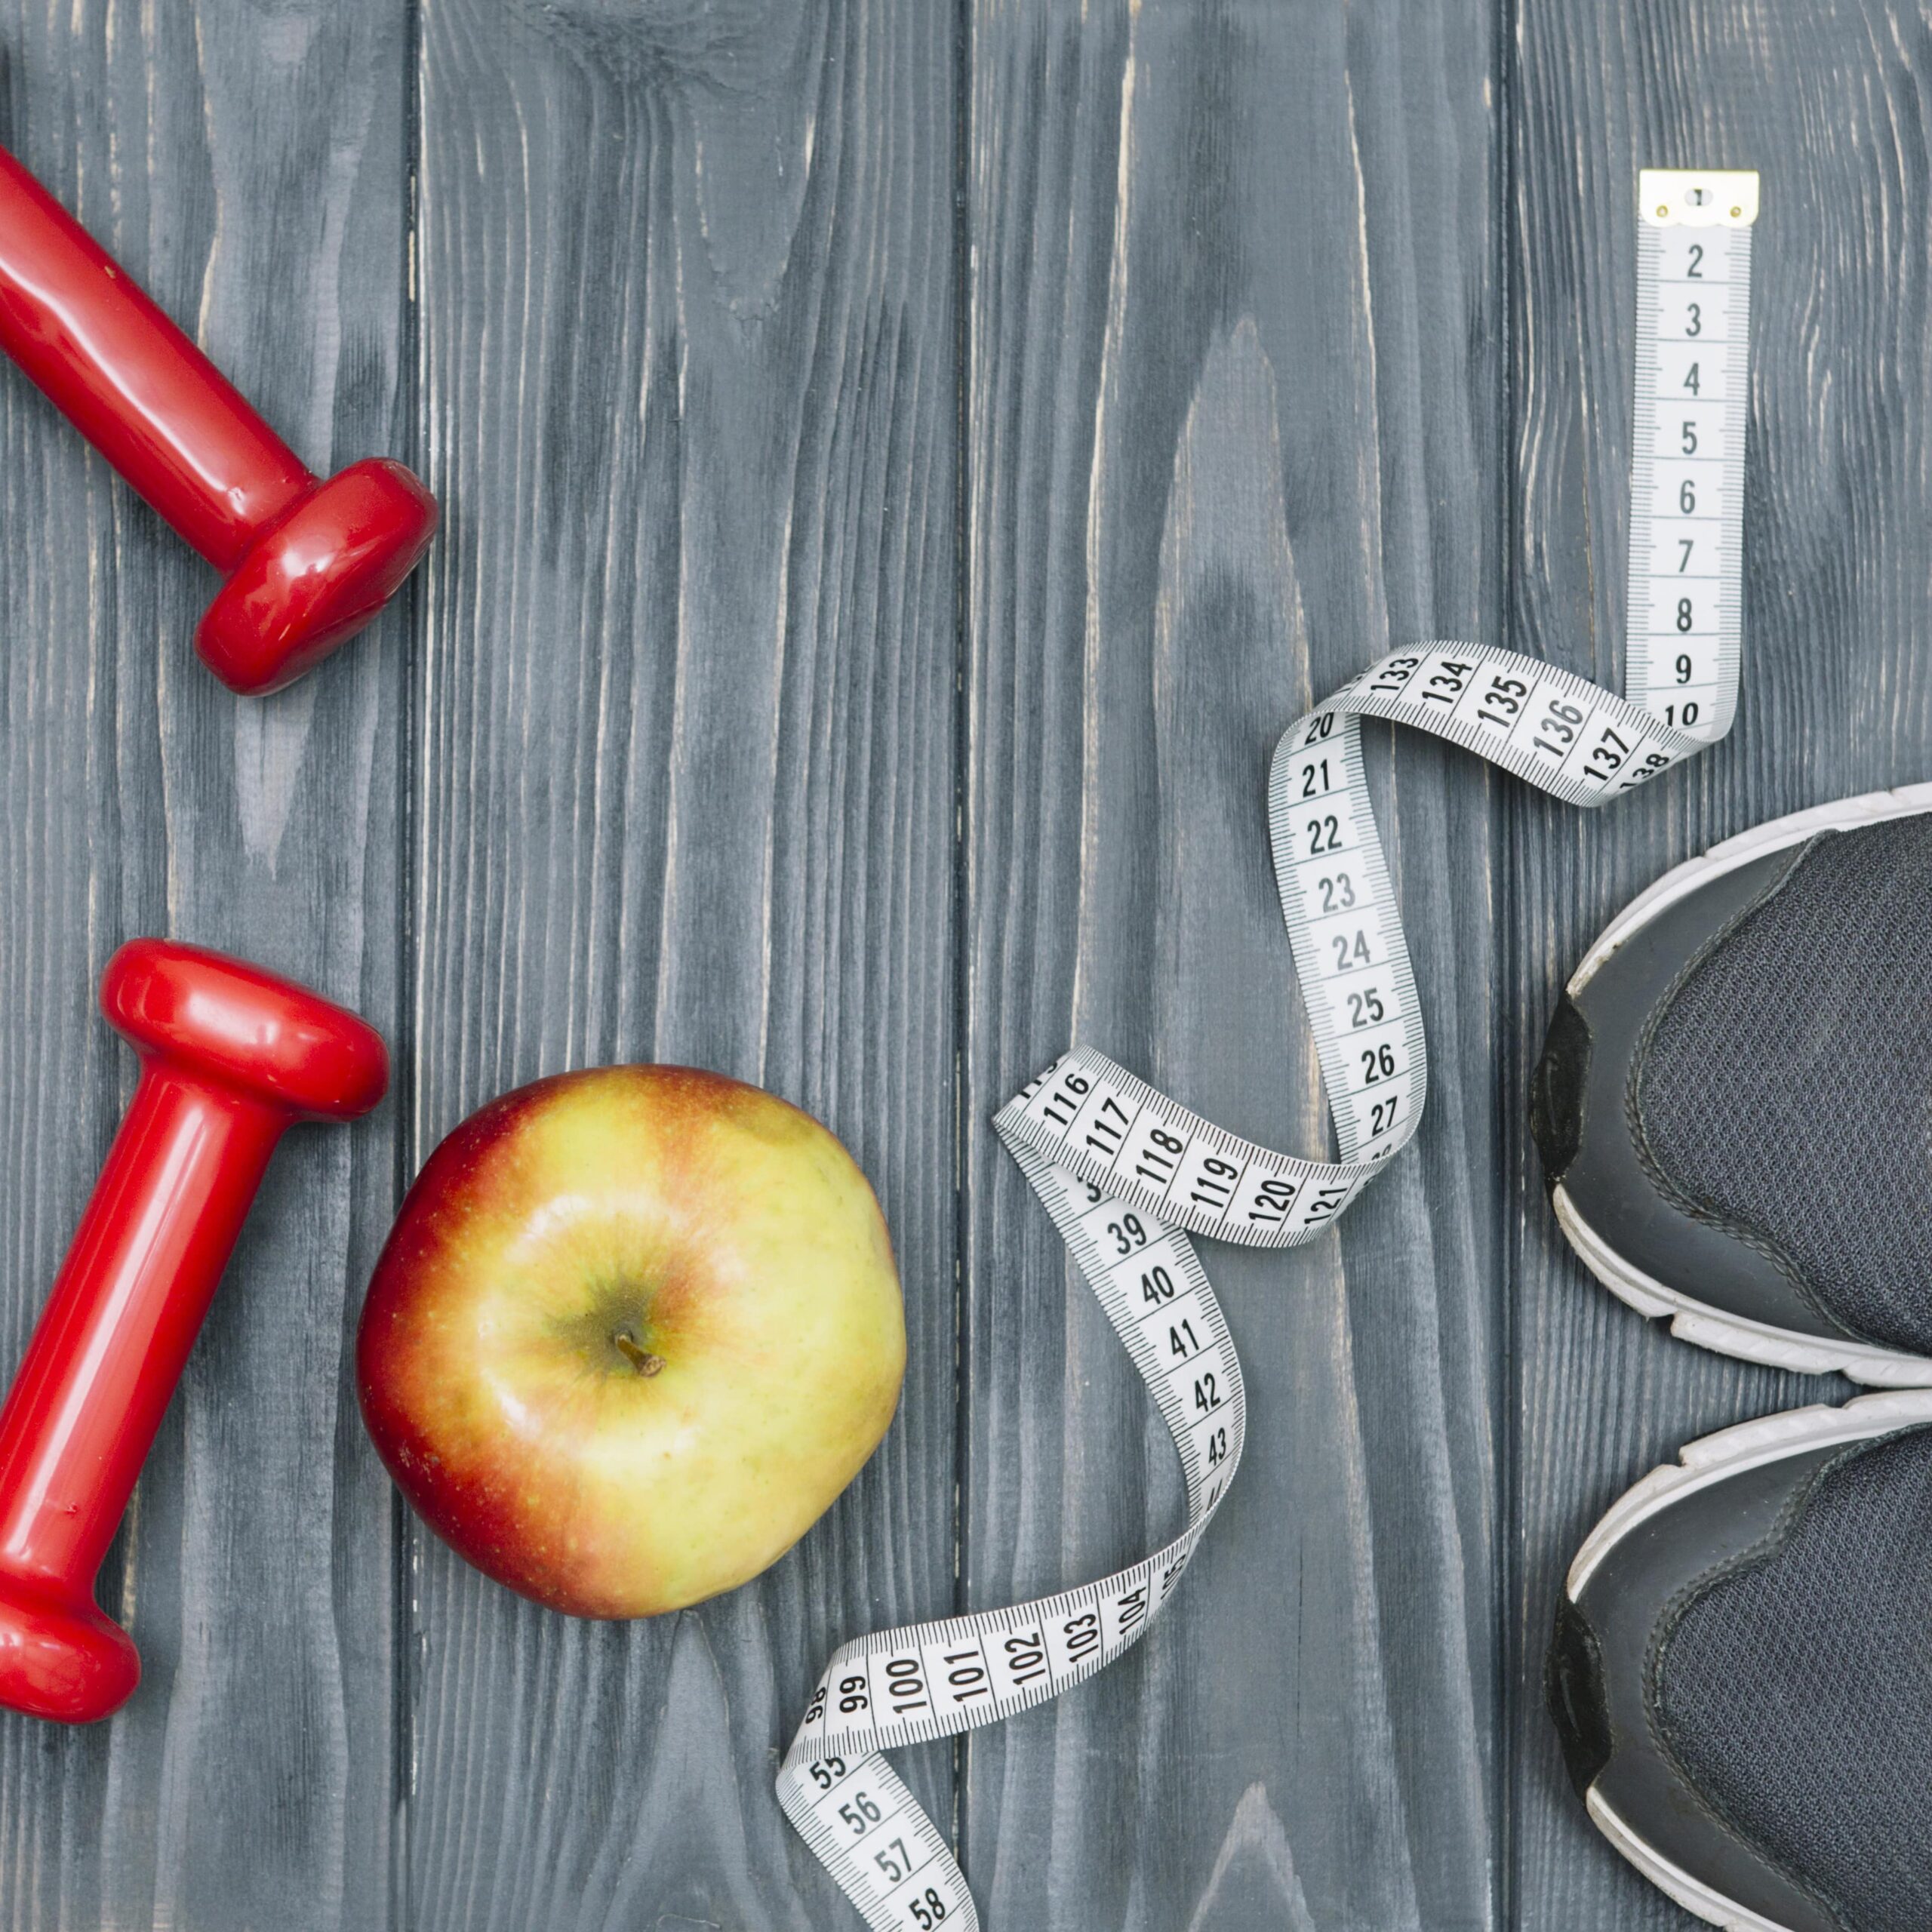 Perdre du poids efficacement : nos 11 conseils pour maigrir